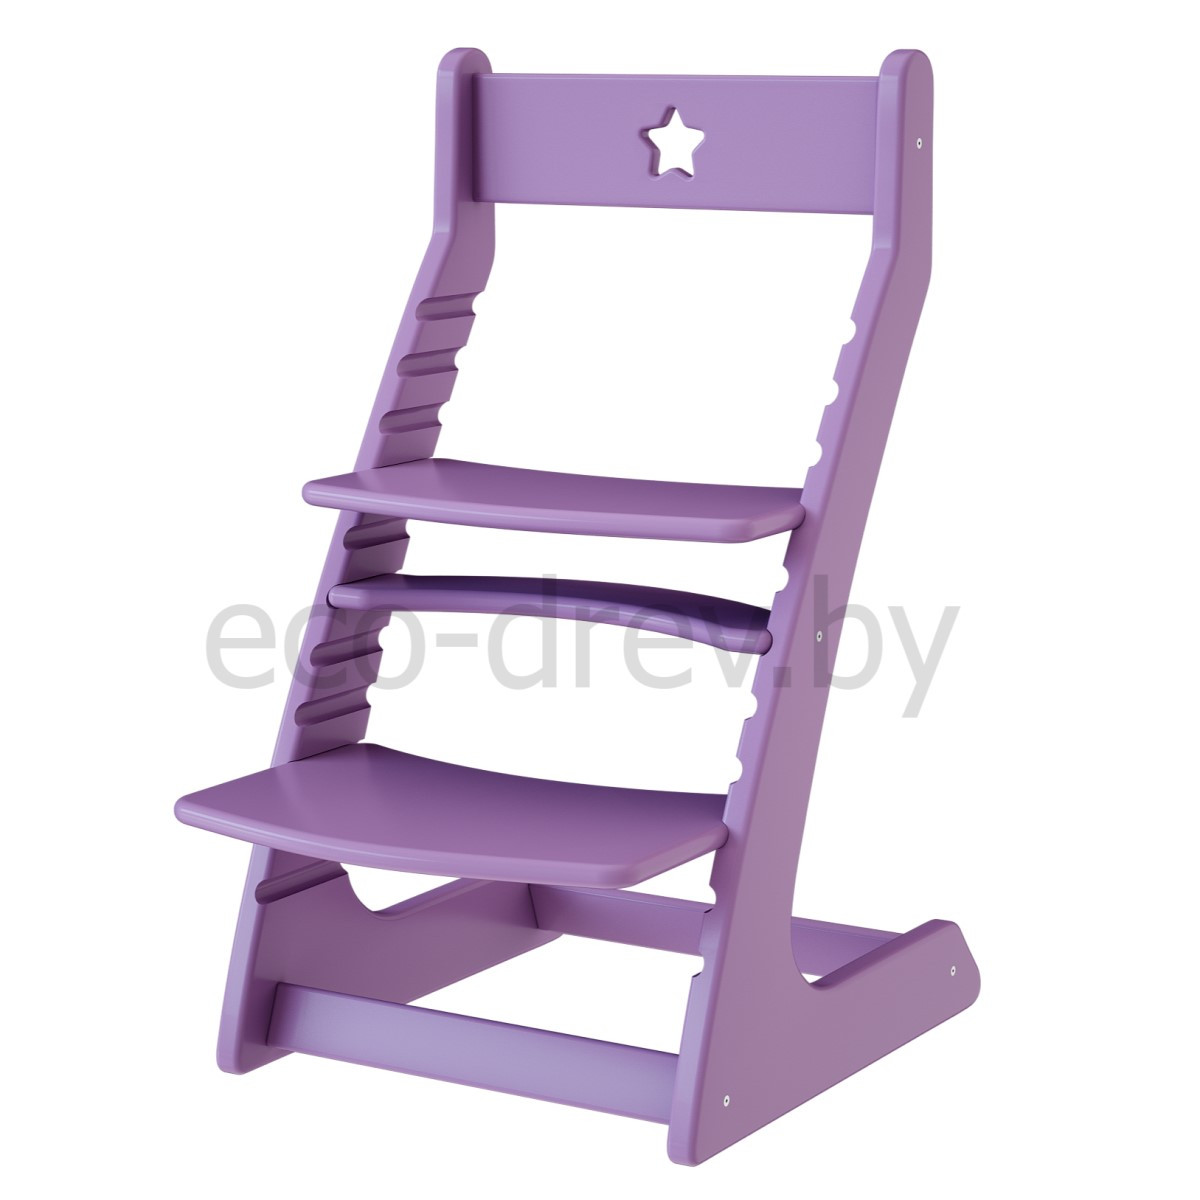 Регулируемый десткий стул "Ростик/Rostik" (Фиолетовый)